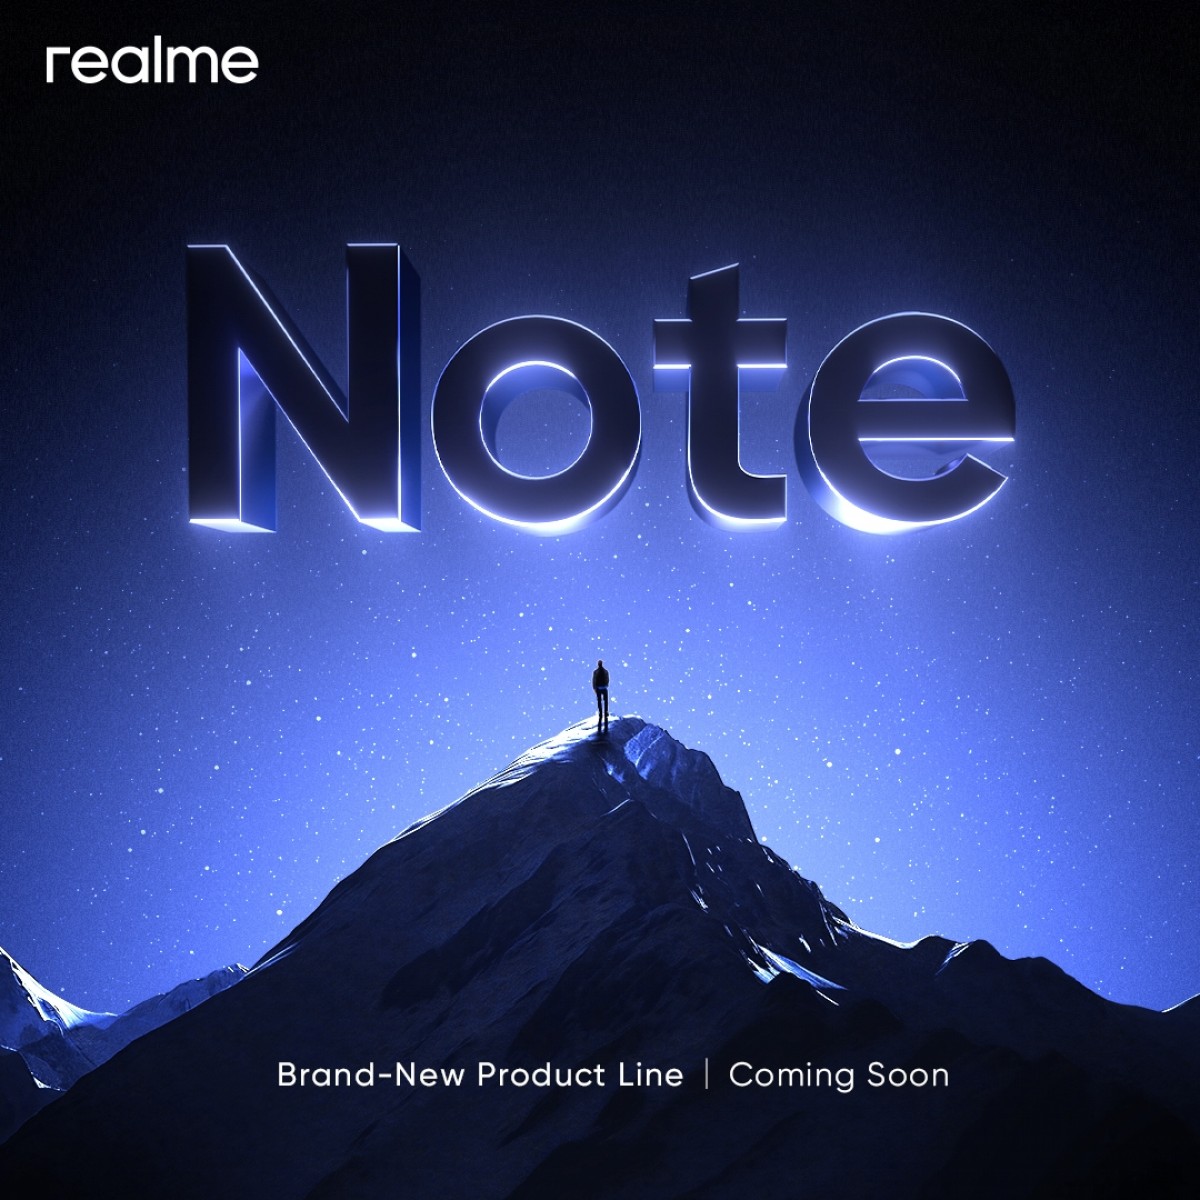 smartfon realme Note 1 cena specyfikacja techniczna